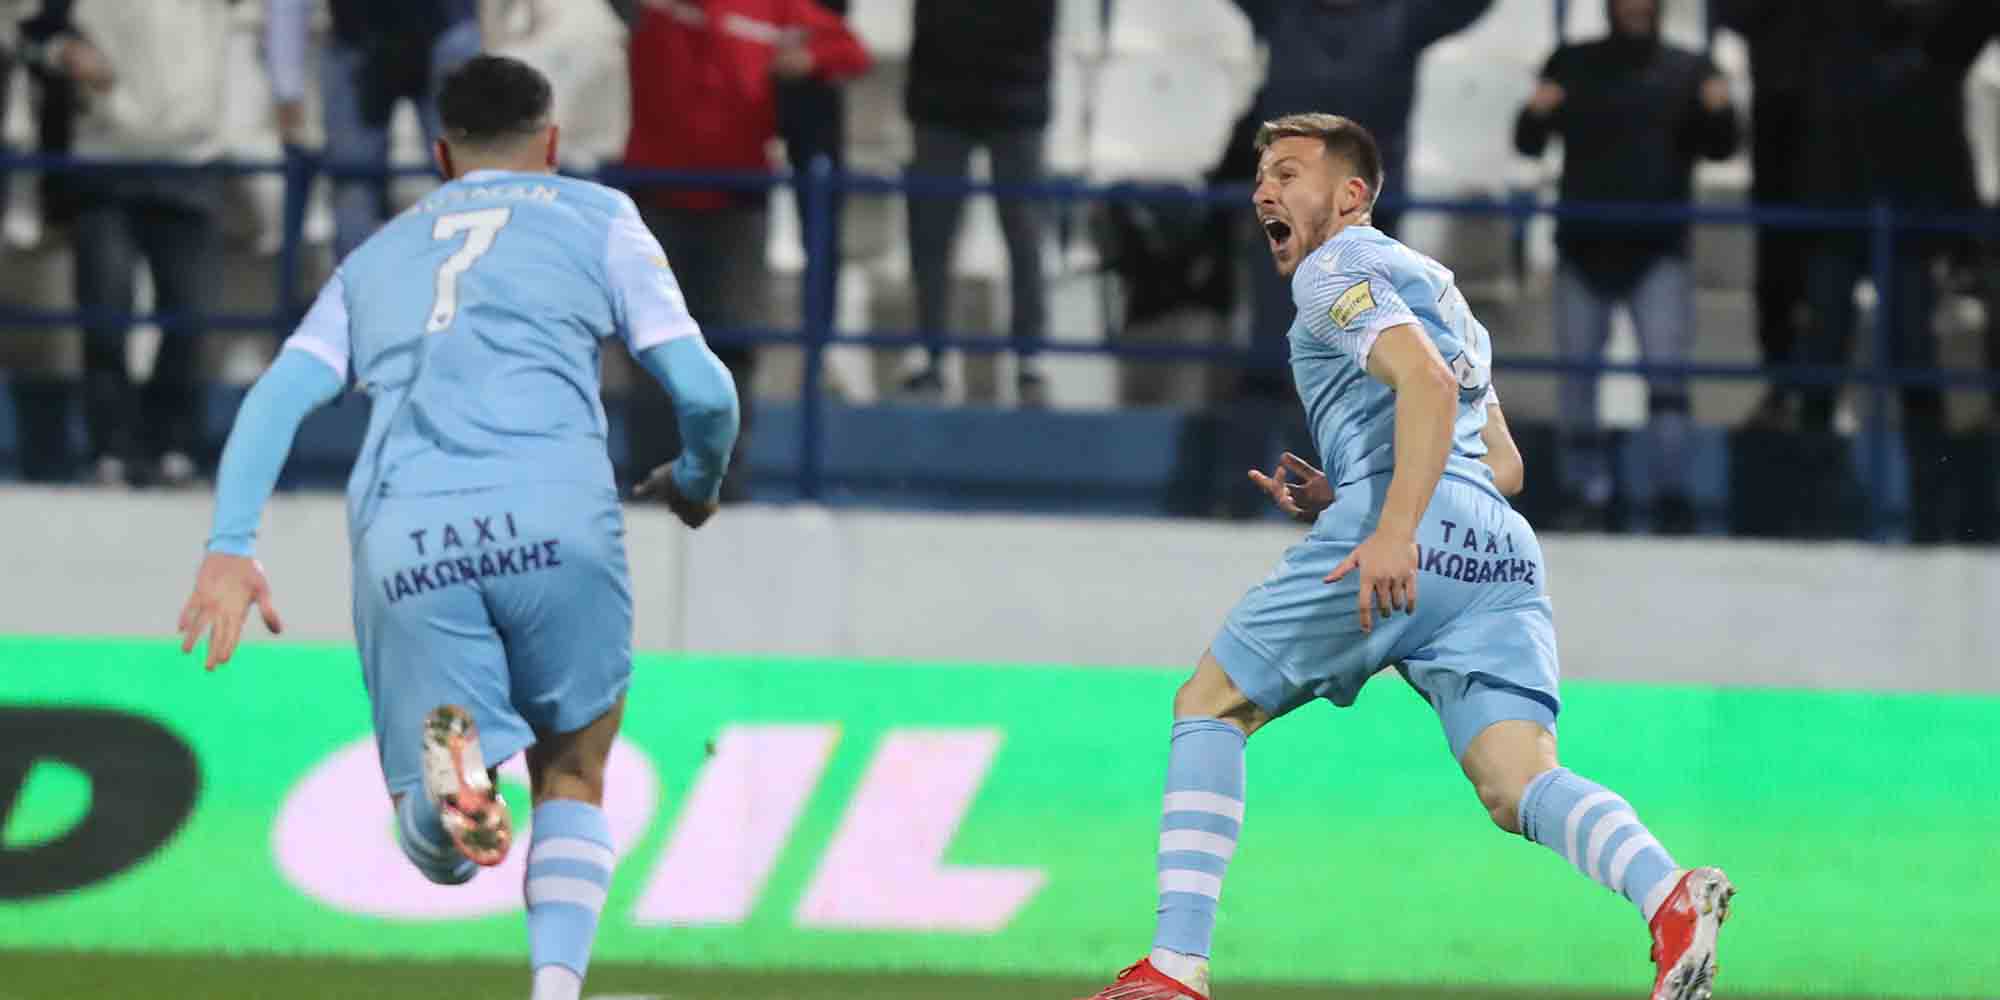 Ο ποδοσφαιριστής του Ιωνικού Γιάννης Κιάκος πανηγυρίζει μετά το δικό του 2-0